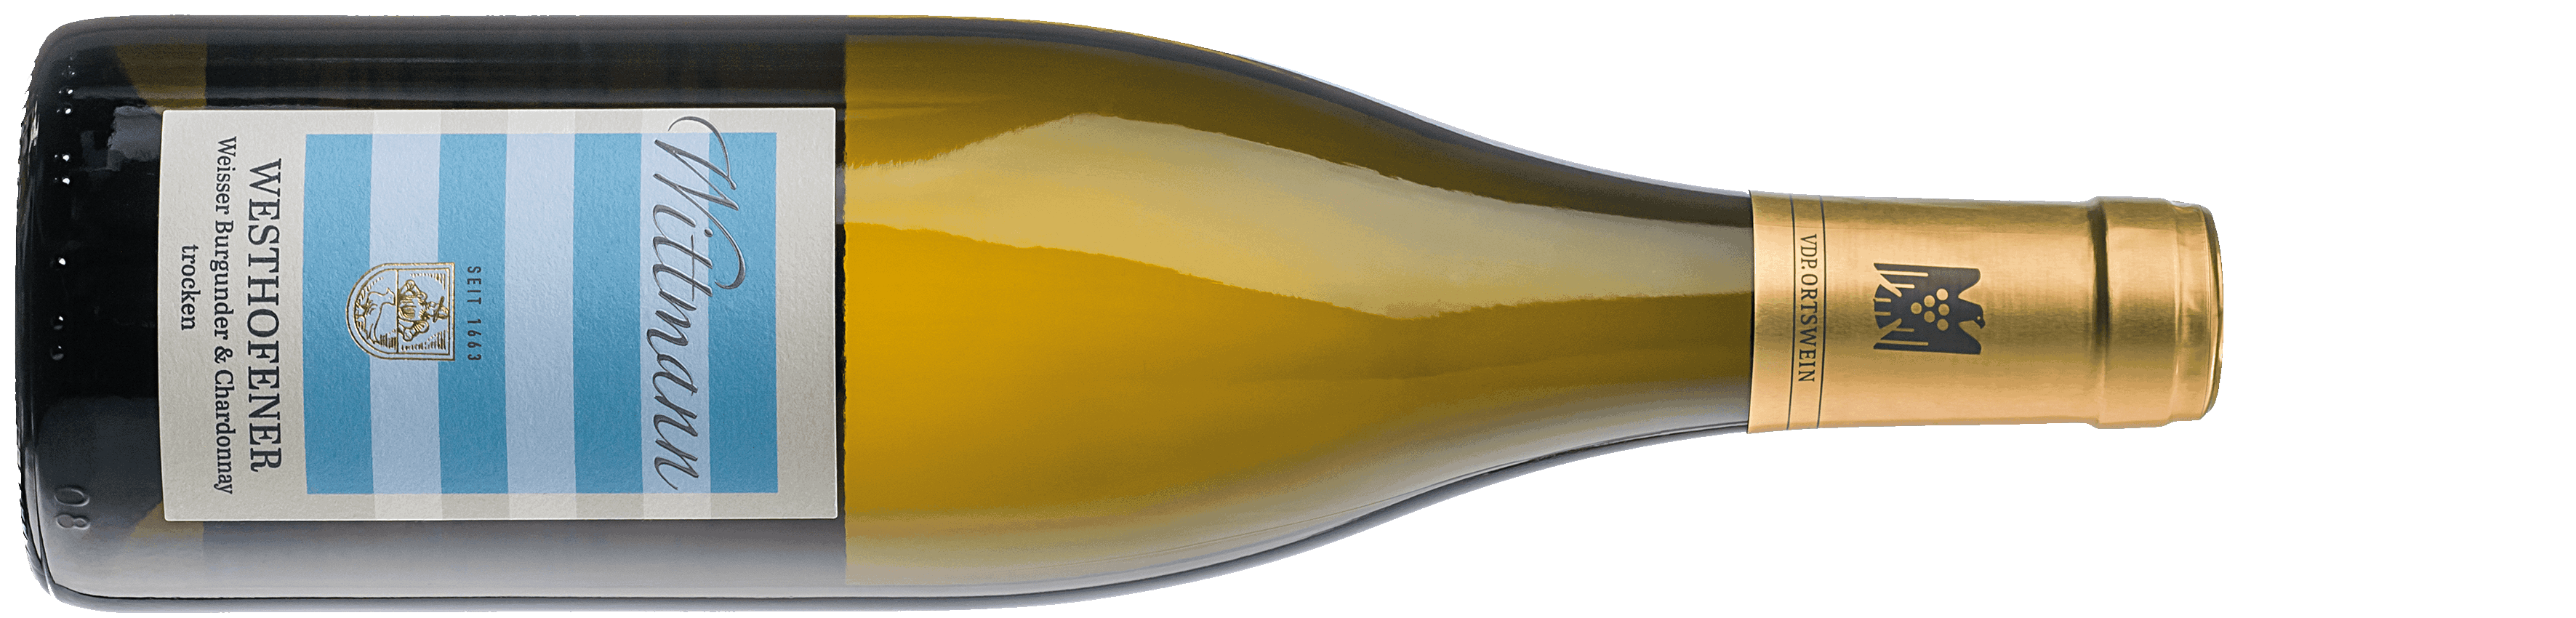 Westhofener Weisser Burgunder & Chardonnay